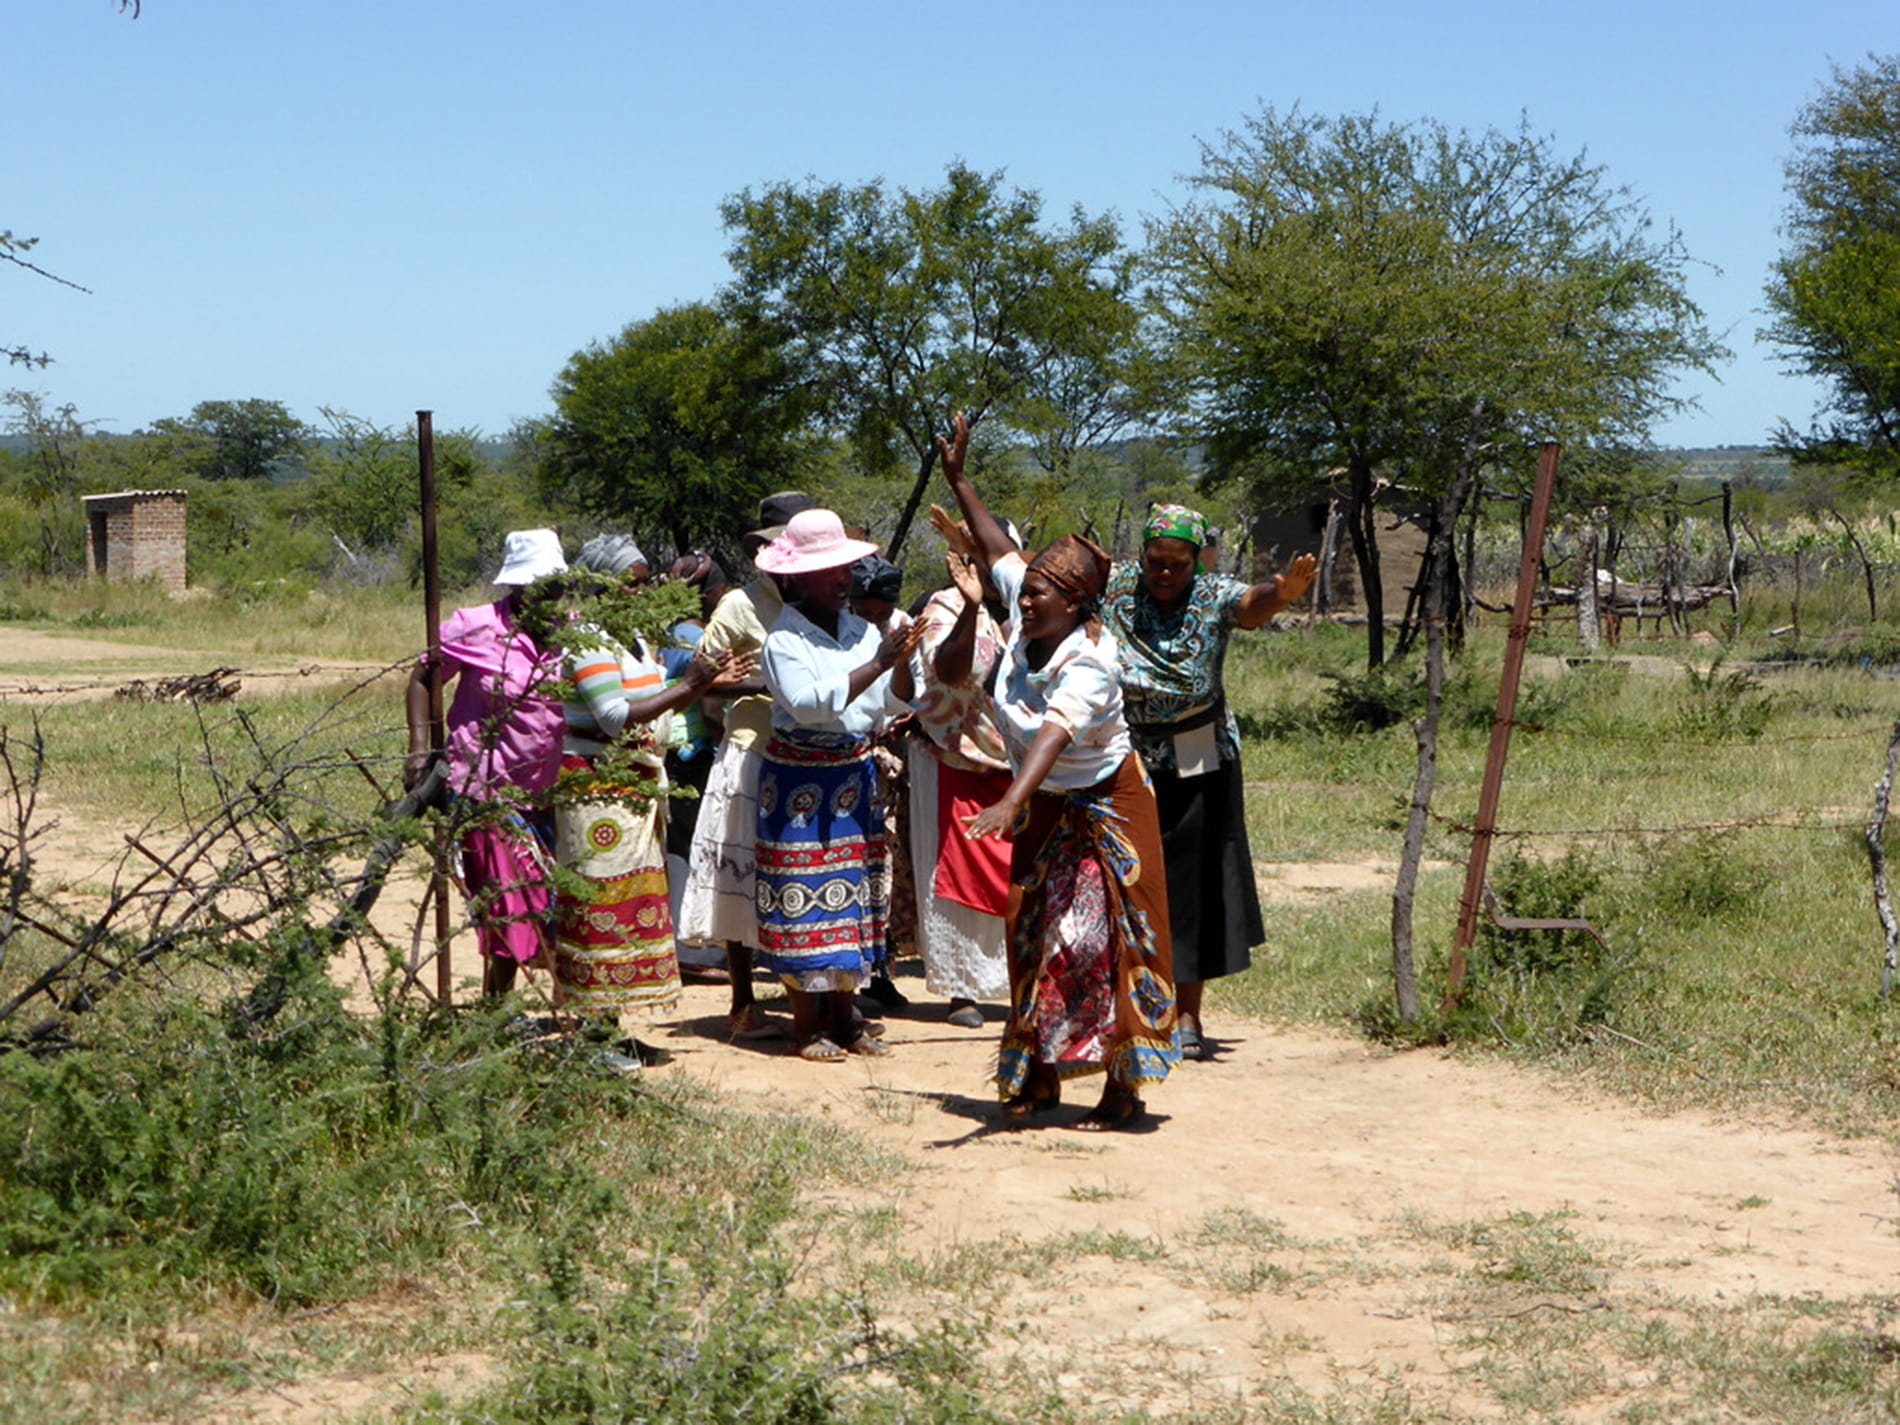 Frauen der Selbsthilfegruppe in Simbabwe auf dem Weg zur Feldarbeit. (Quelle: Kindernothilfe)